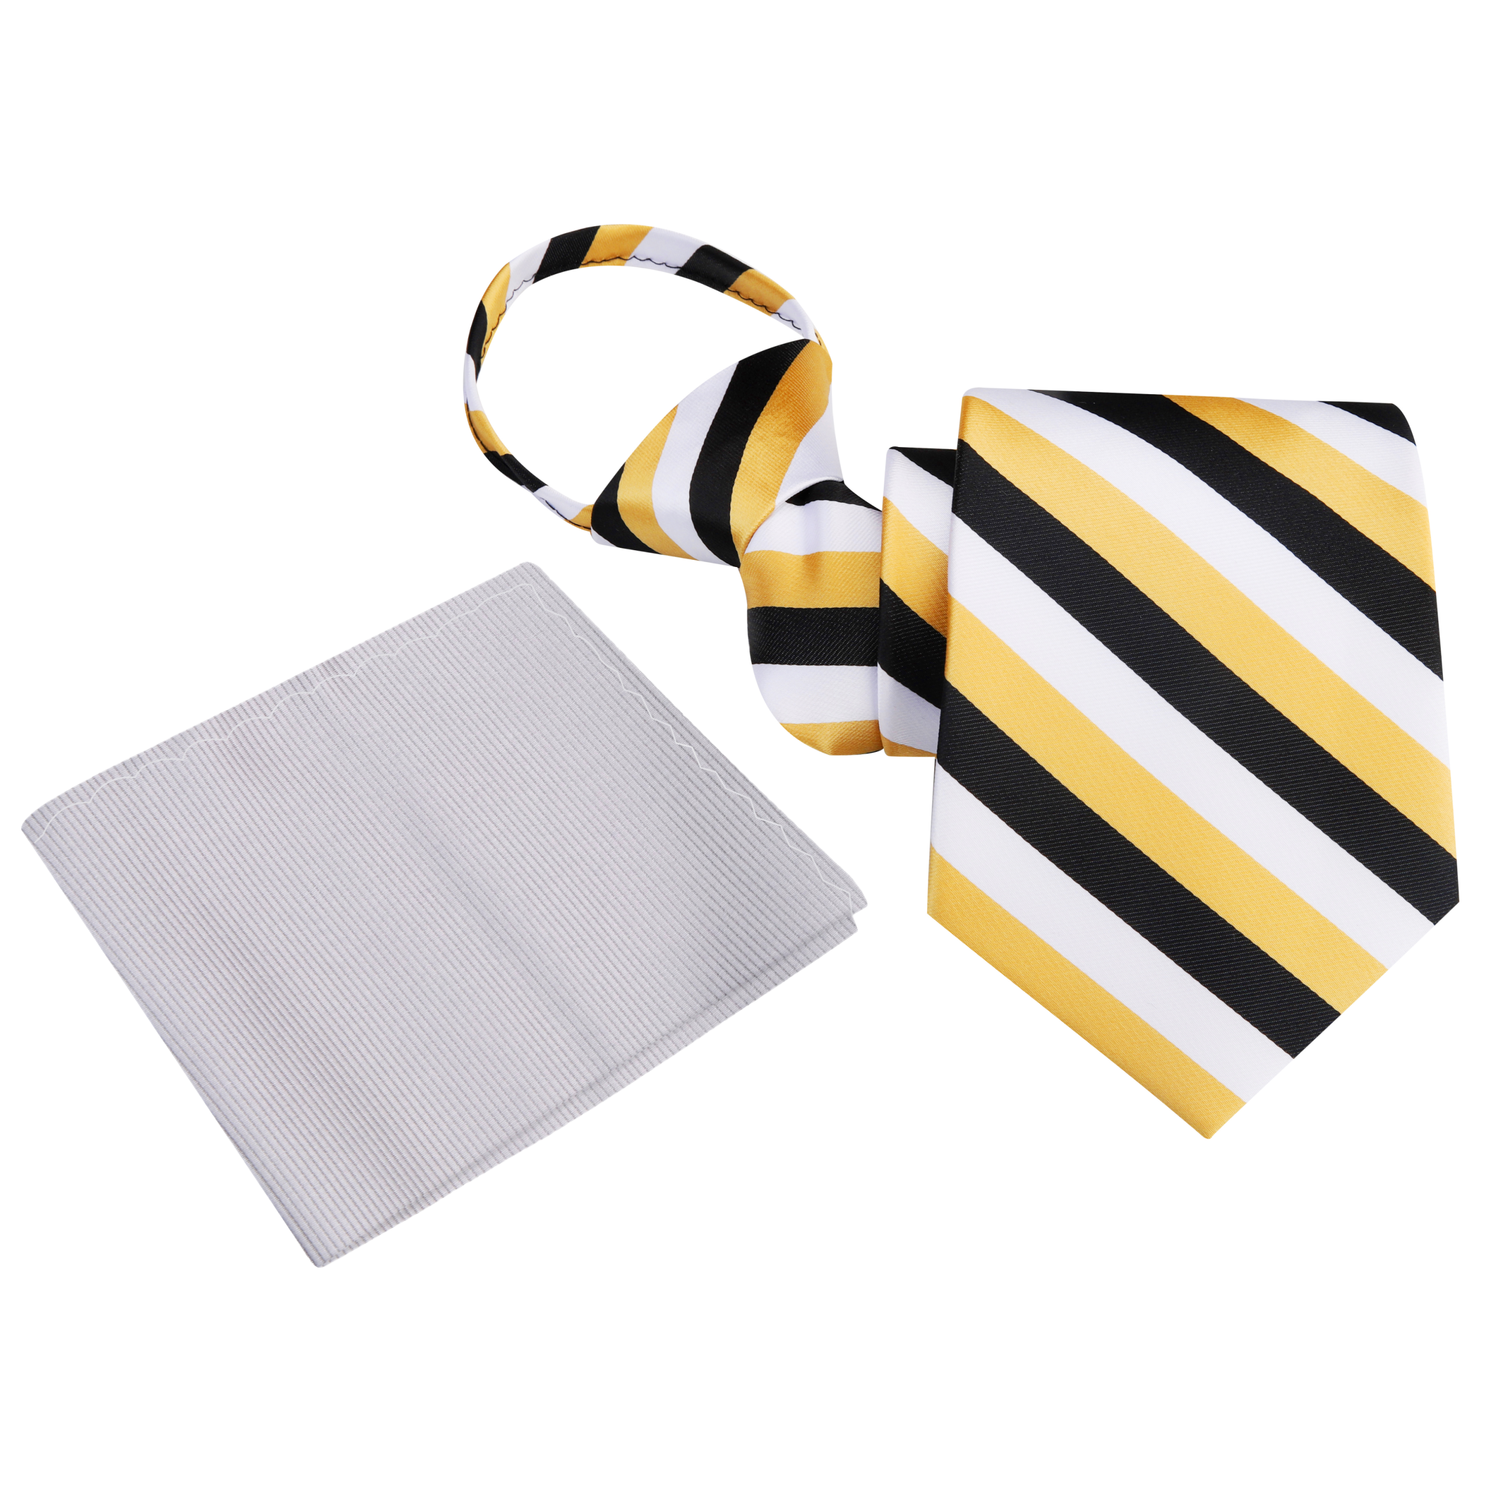 Zipper Tie: Gold, White, Black Stripe Tie and Grey Square